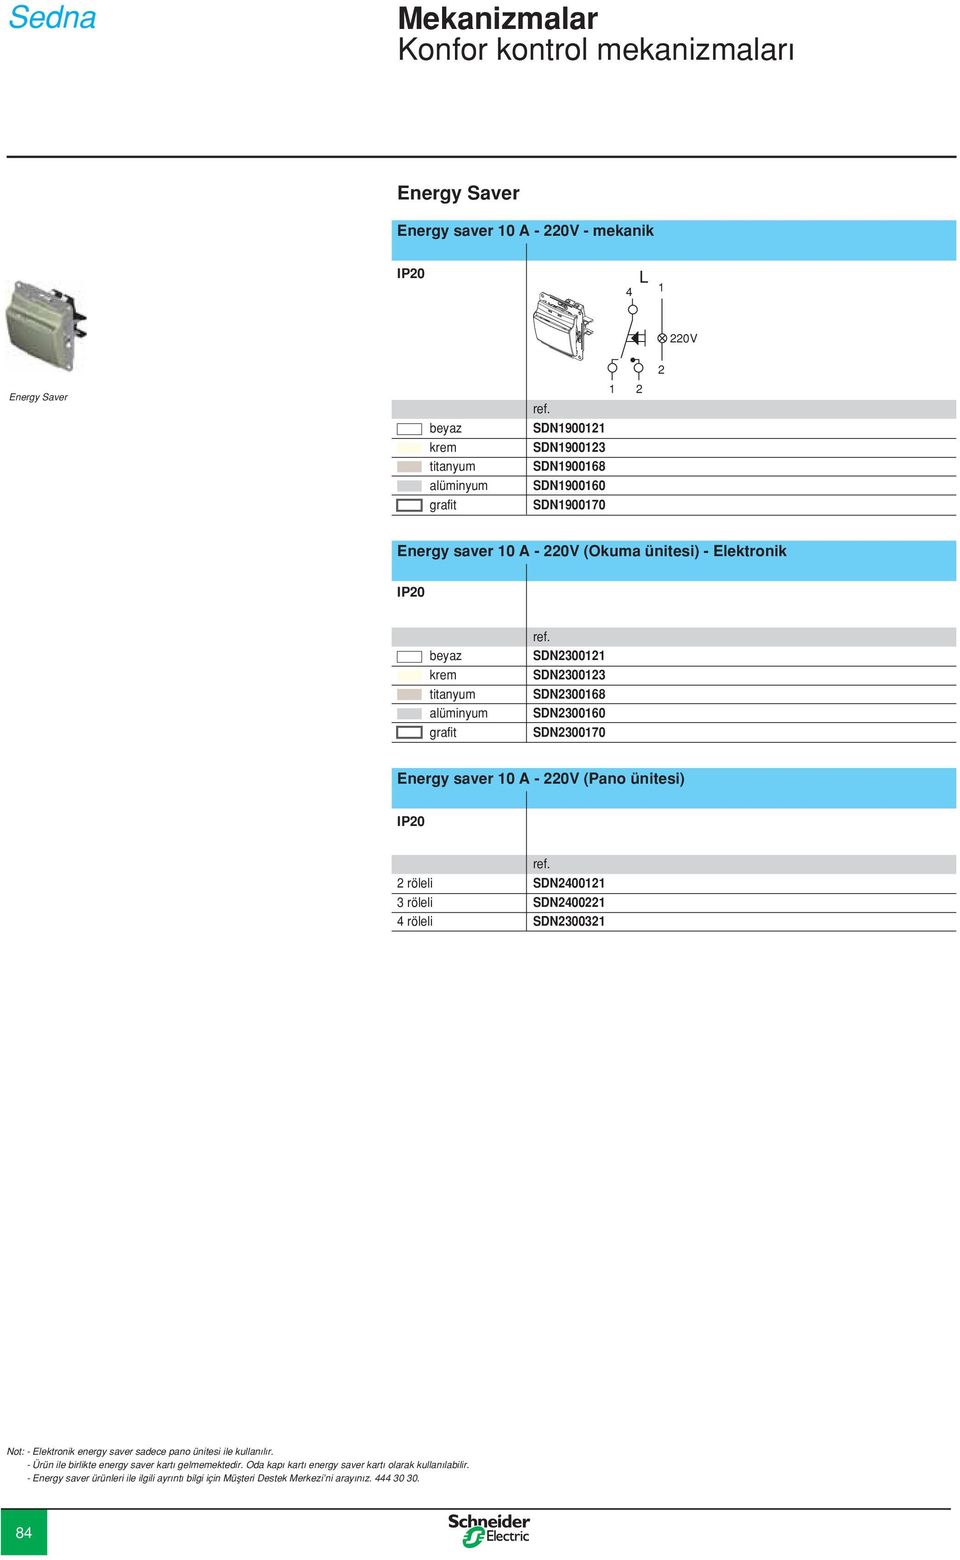 3 röleli SDN240022 4 röleli SDN230032 Not: - Elektronik energy saver sadece pano ünitesi ile kullanılır. - Ürün ile birlikte energy saver kartı gelmemektedir.